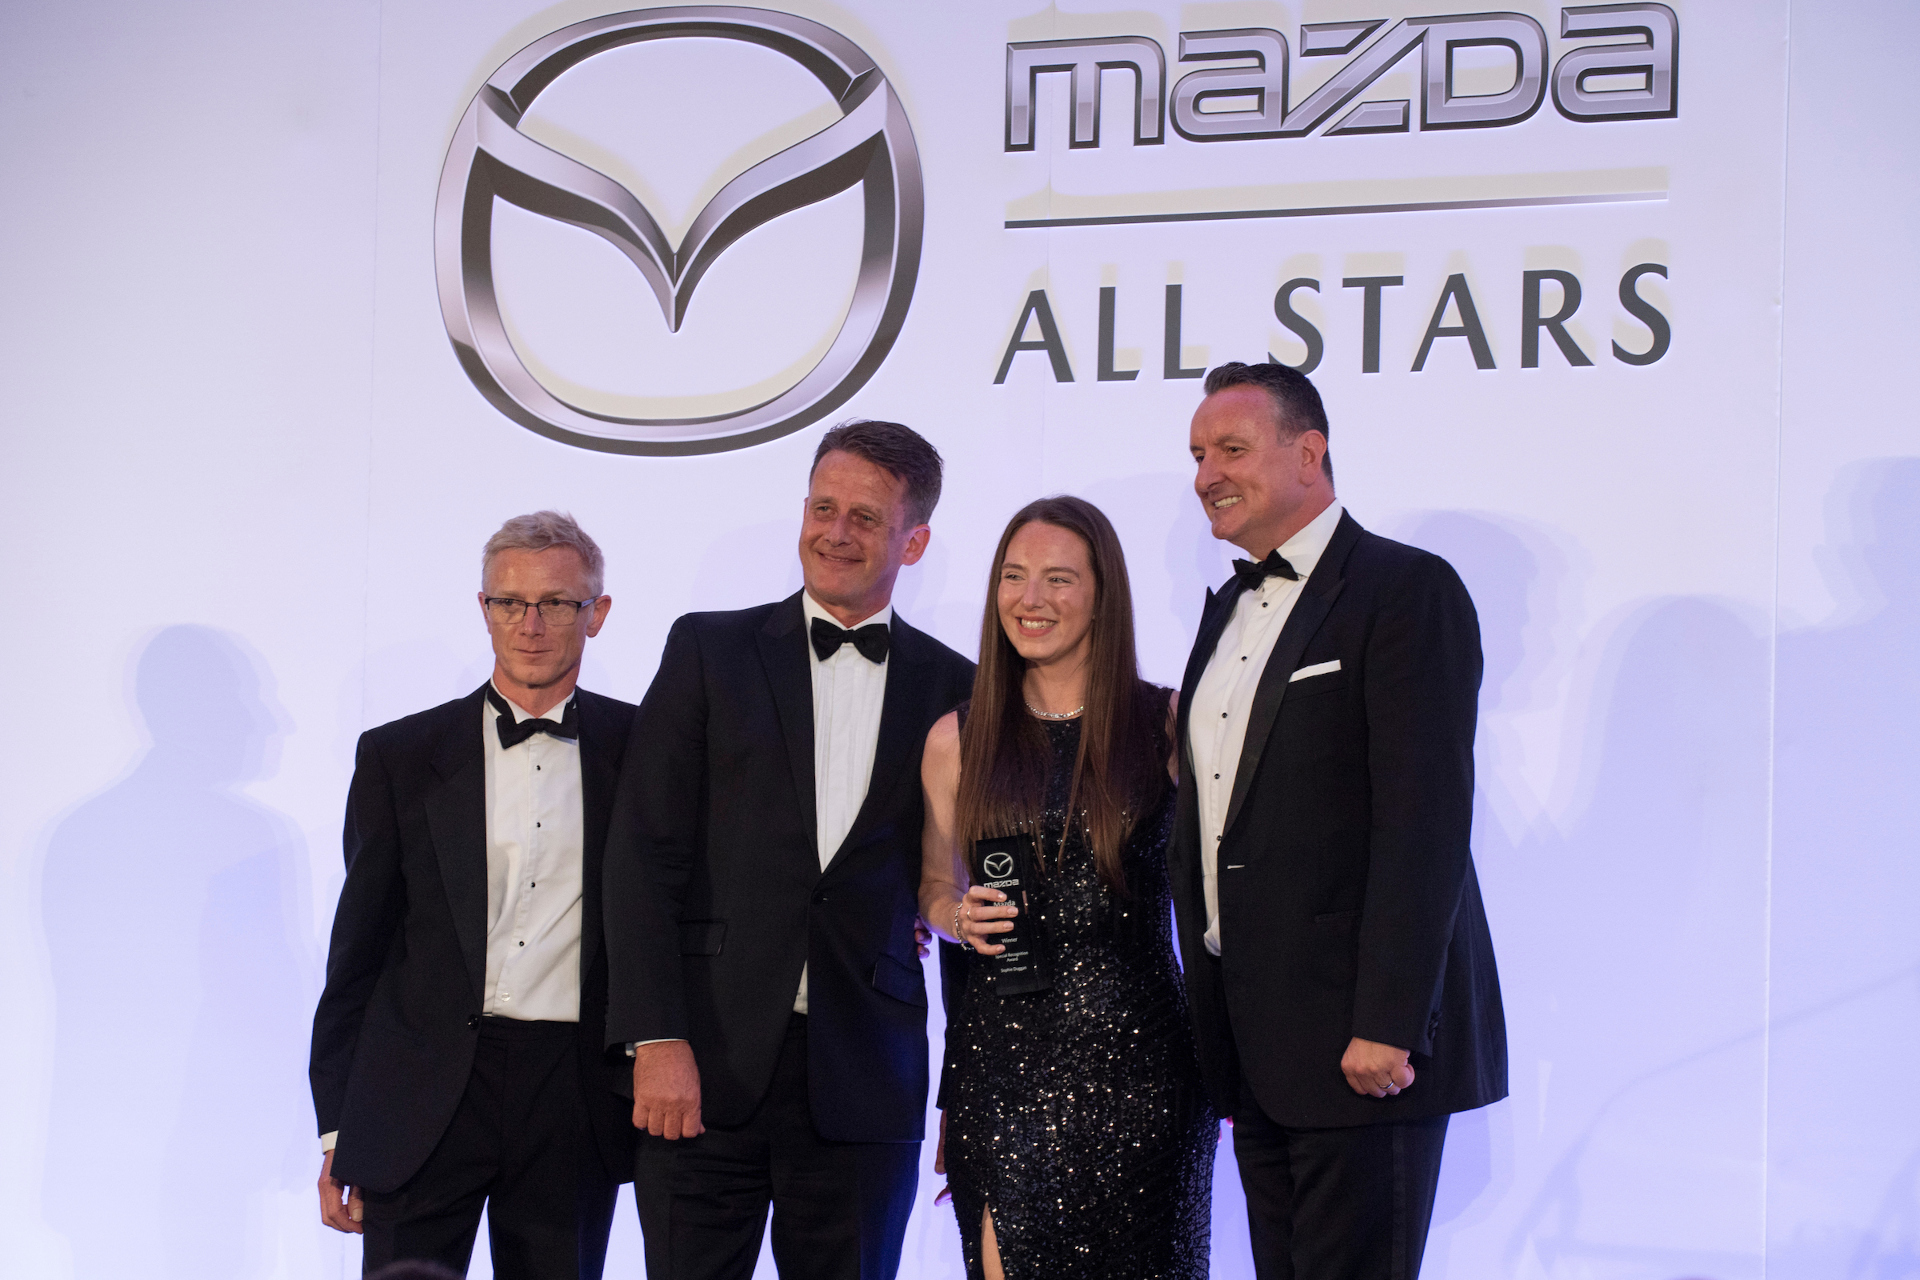 Mazda Annual All-Stars Celebration